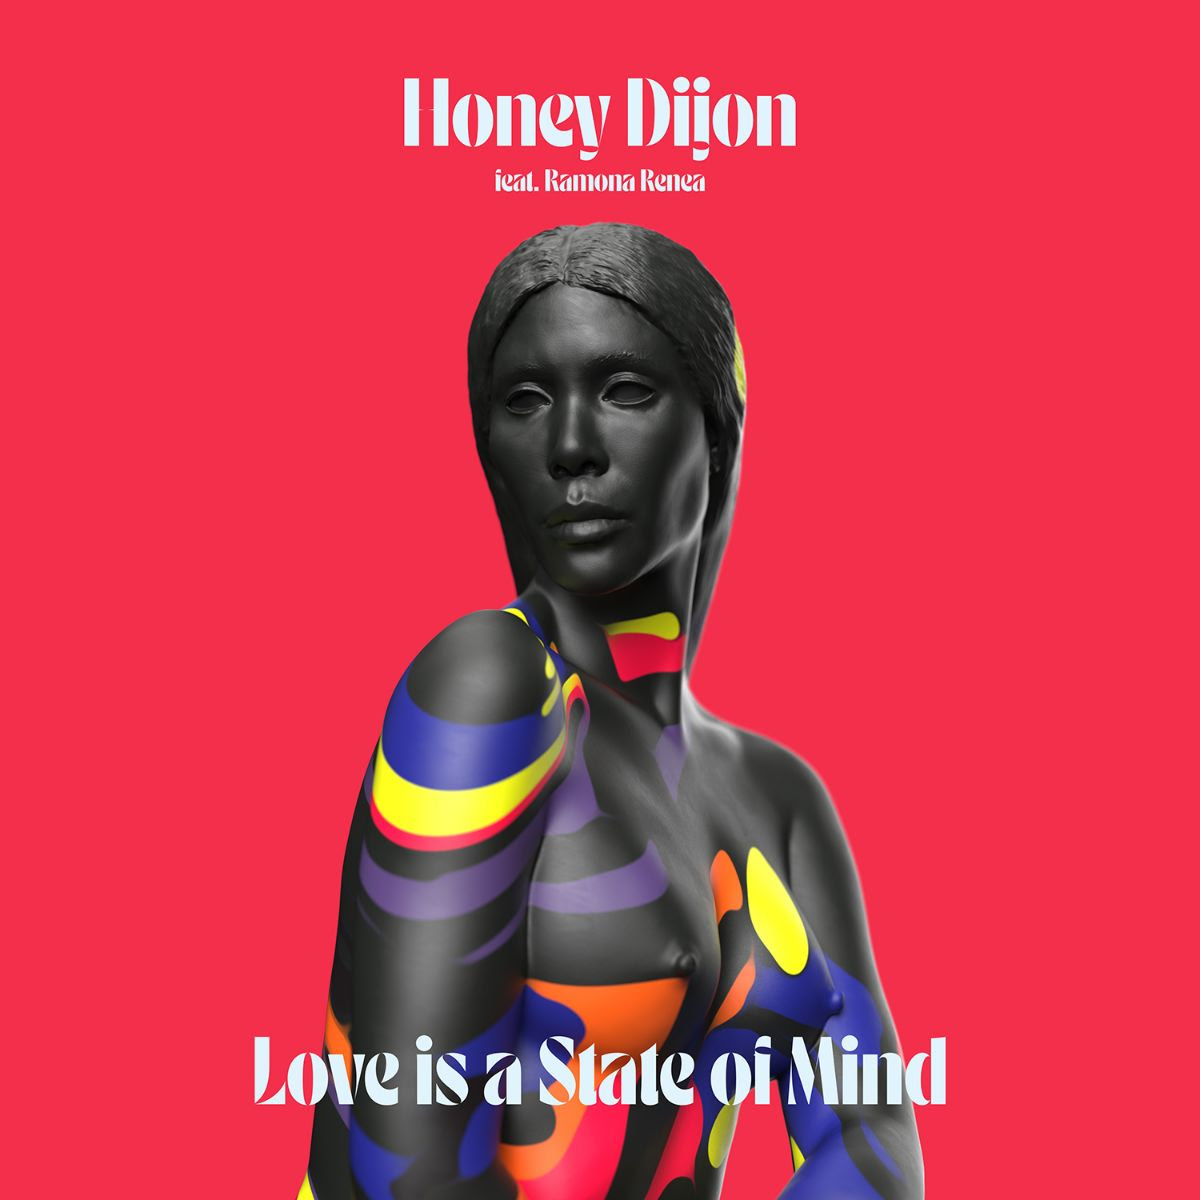 single love is a state of mind d'honey dijon artwork réalisé par le sculpteur anglais 3D musique house de chicago extrait de l'album black Girl Magic via Classic Music Company